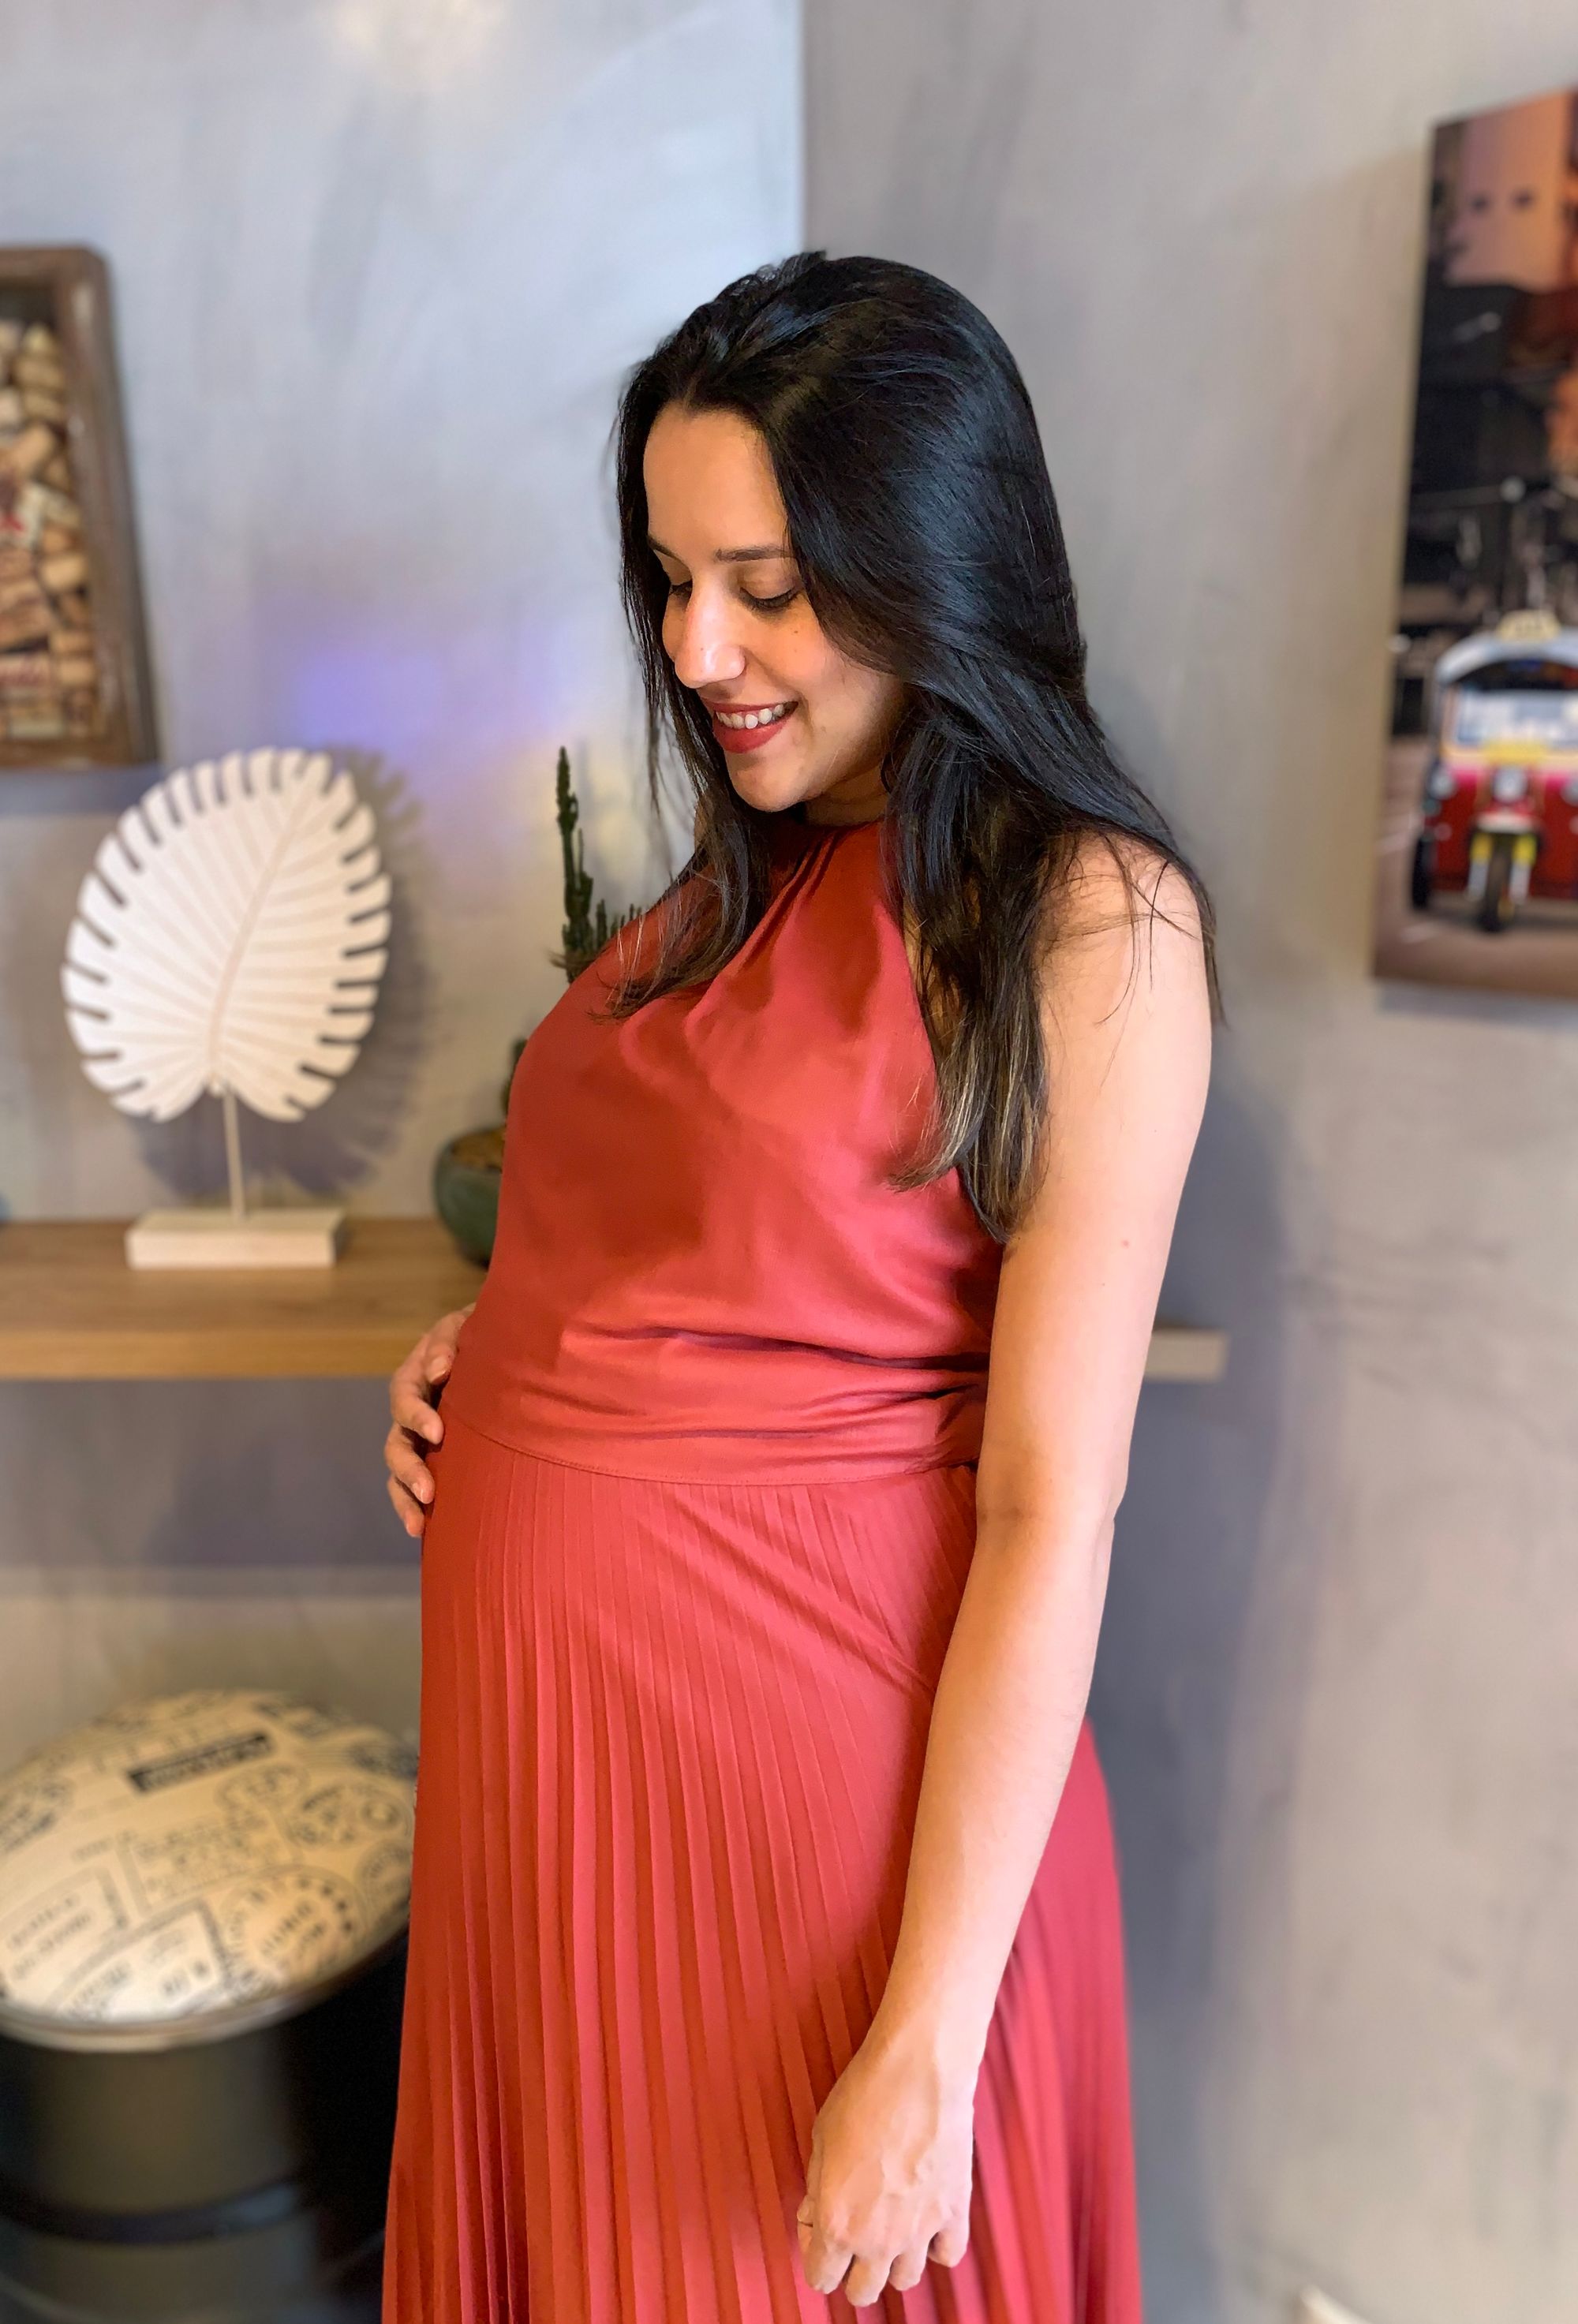 Bloom Care anuncia Danielle Pinheiro, ex-Bradesco, como gerente de comunicação aos 9 meses de gravidez